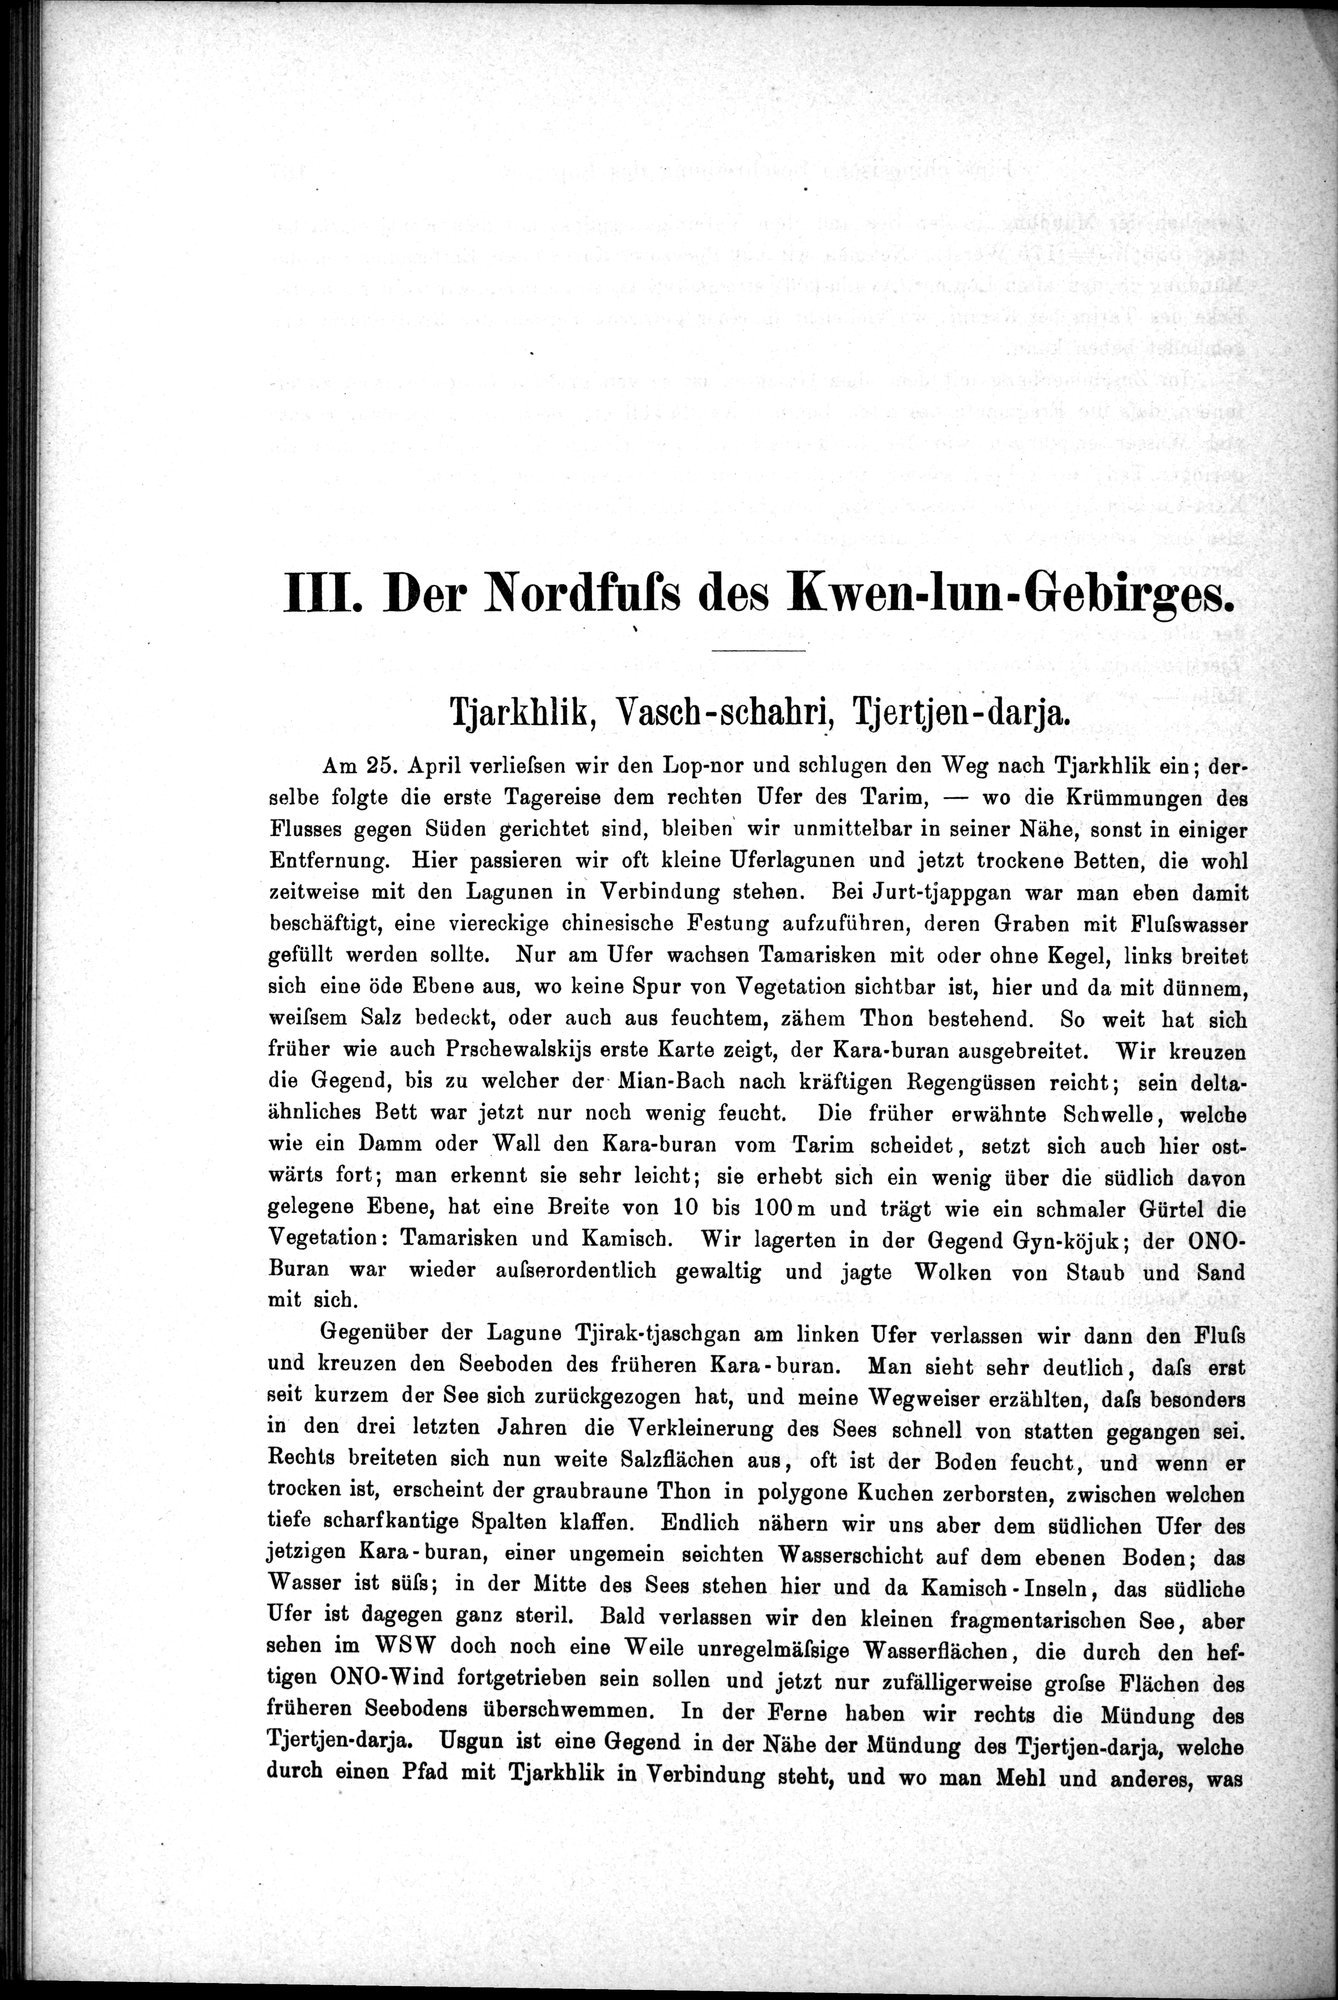 Die Geographische-Wissenschaftlichen Ergebnisse meiner Reisen in Zentralasien, 1894-1897 : vol.1 / Page 180 (Grayscale High Resolution Image)